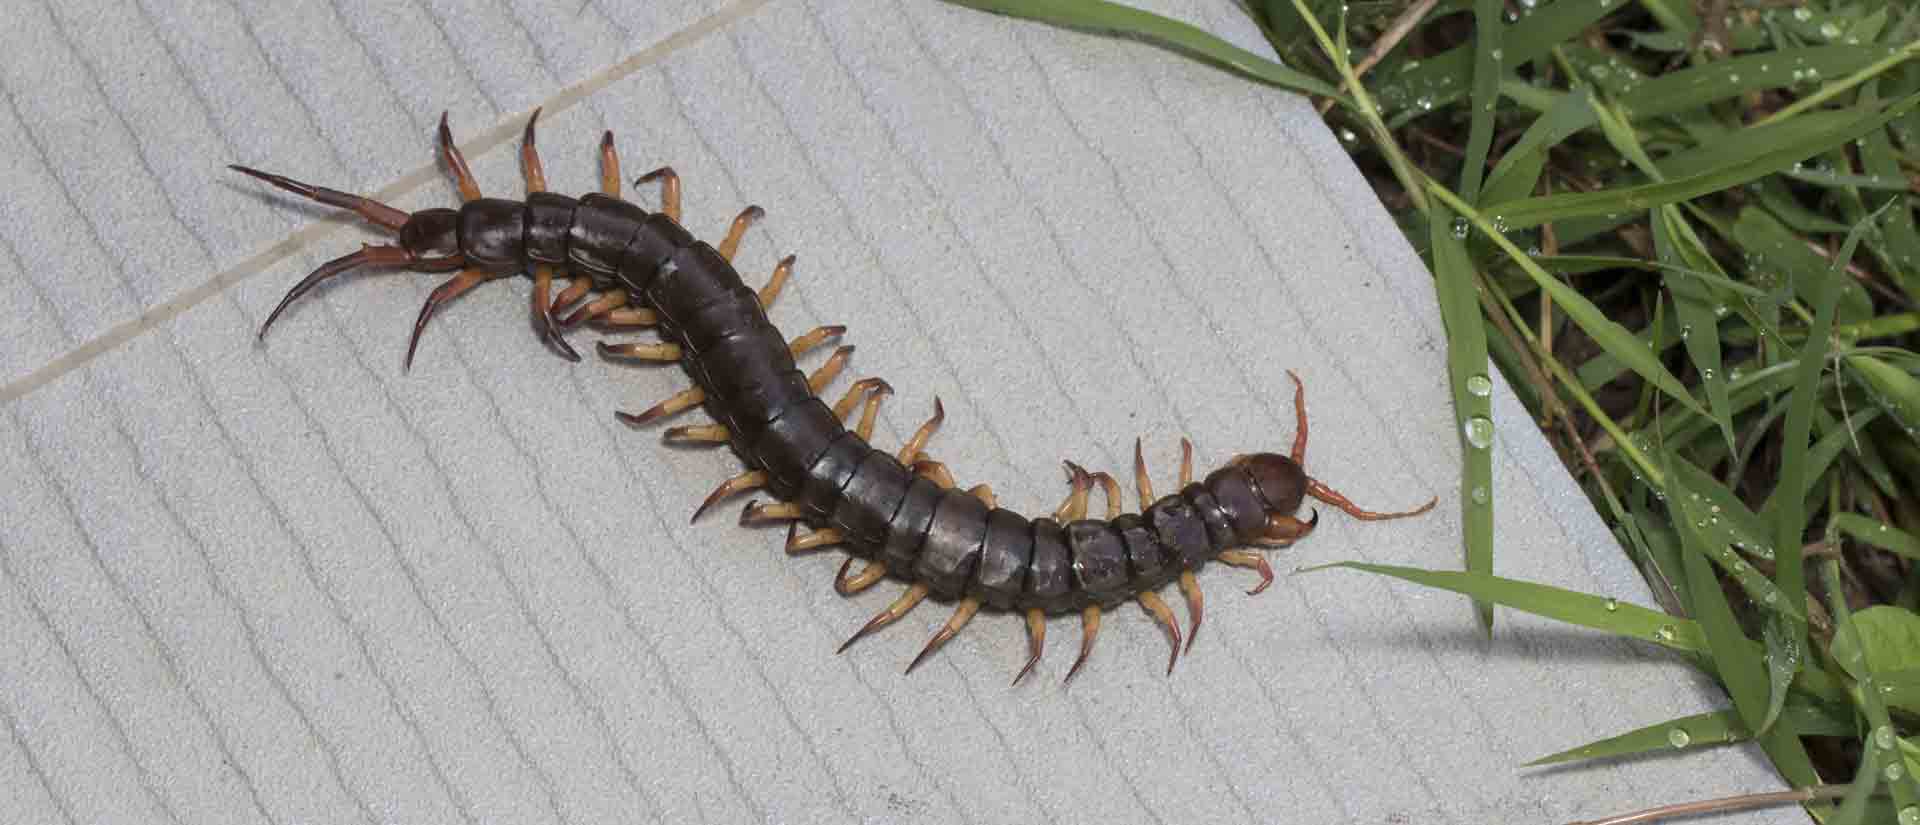 centipede pest control winter gardens